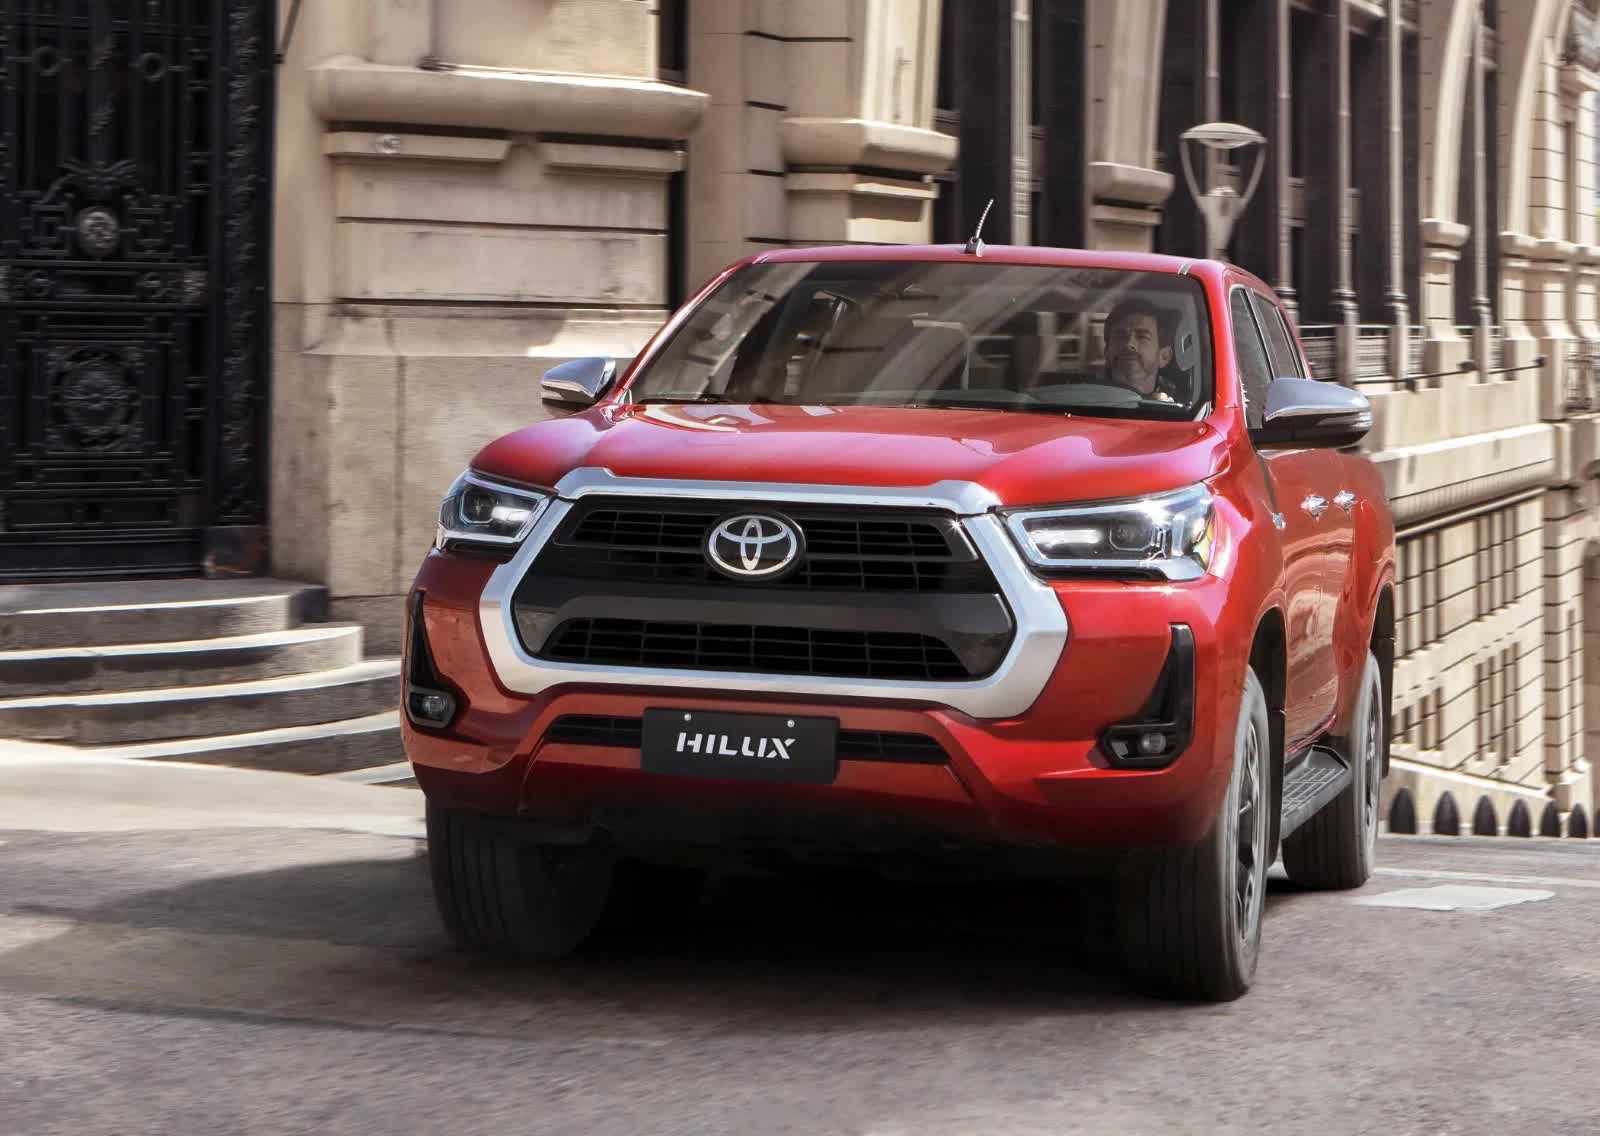 Đại lý hé lộ thông tin Toyota Hilux mới: Về Việt Nam tháng 3, giá dự kiến 852 triệu, trở lại đấu Ford Ranger - Ảnh 3.